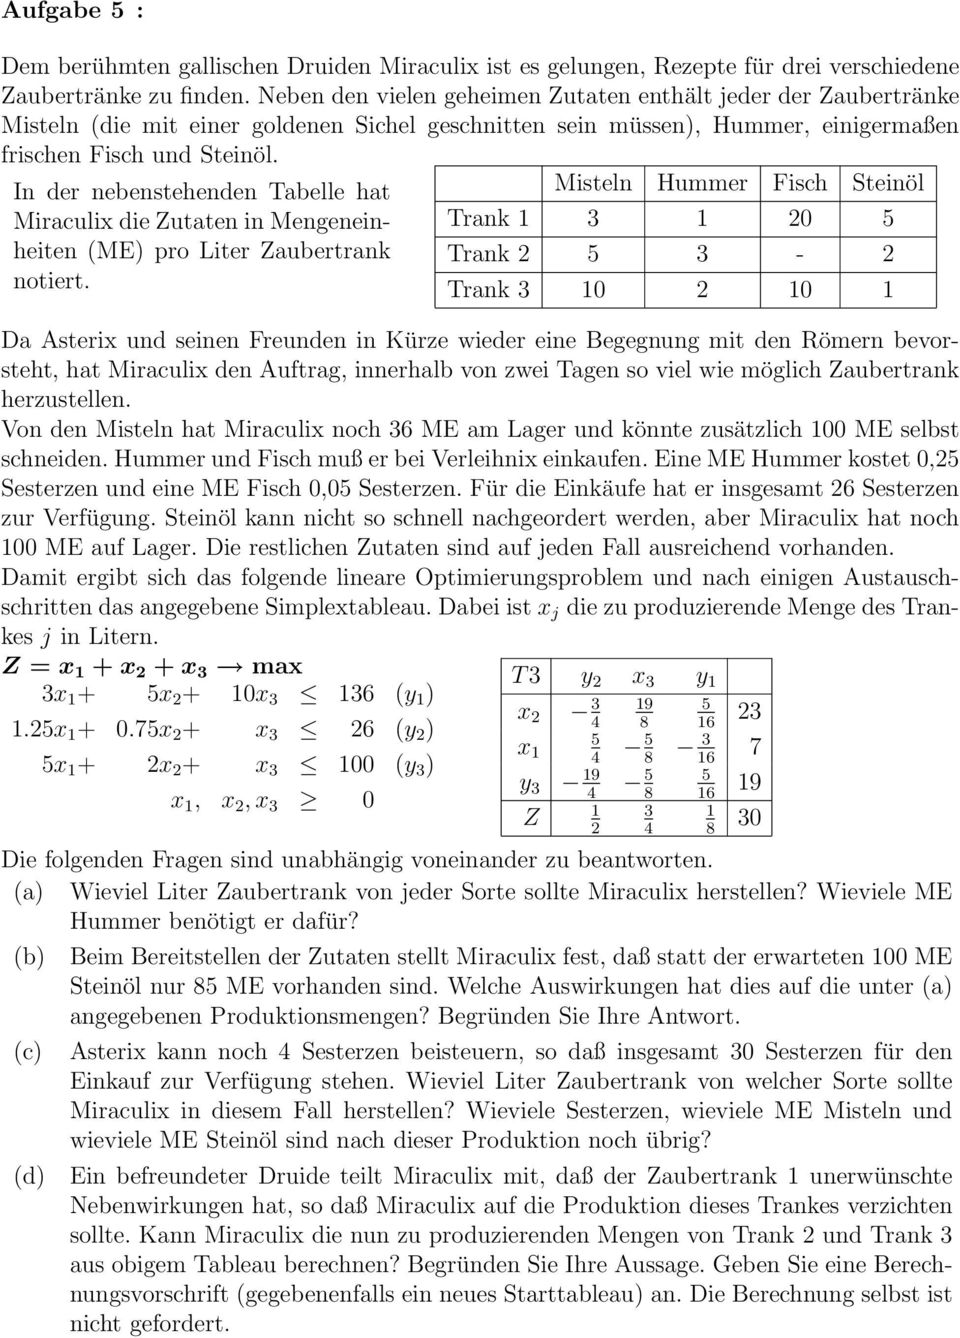 In der nebenstehenden Tabelle hat Miraculix die Zutaten in Mengeneinheiten (ME) pro Liter Zaubertrank notiert.